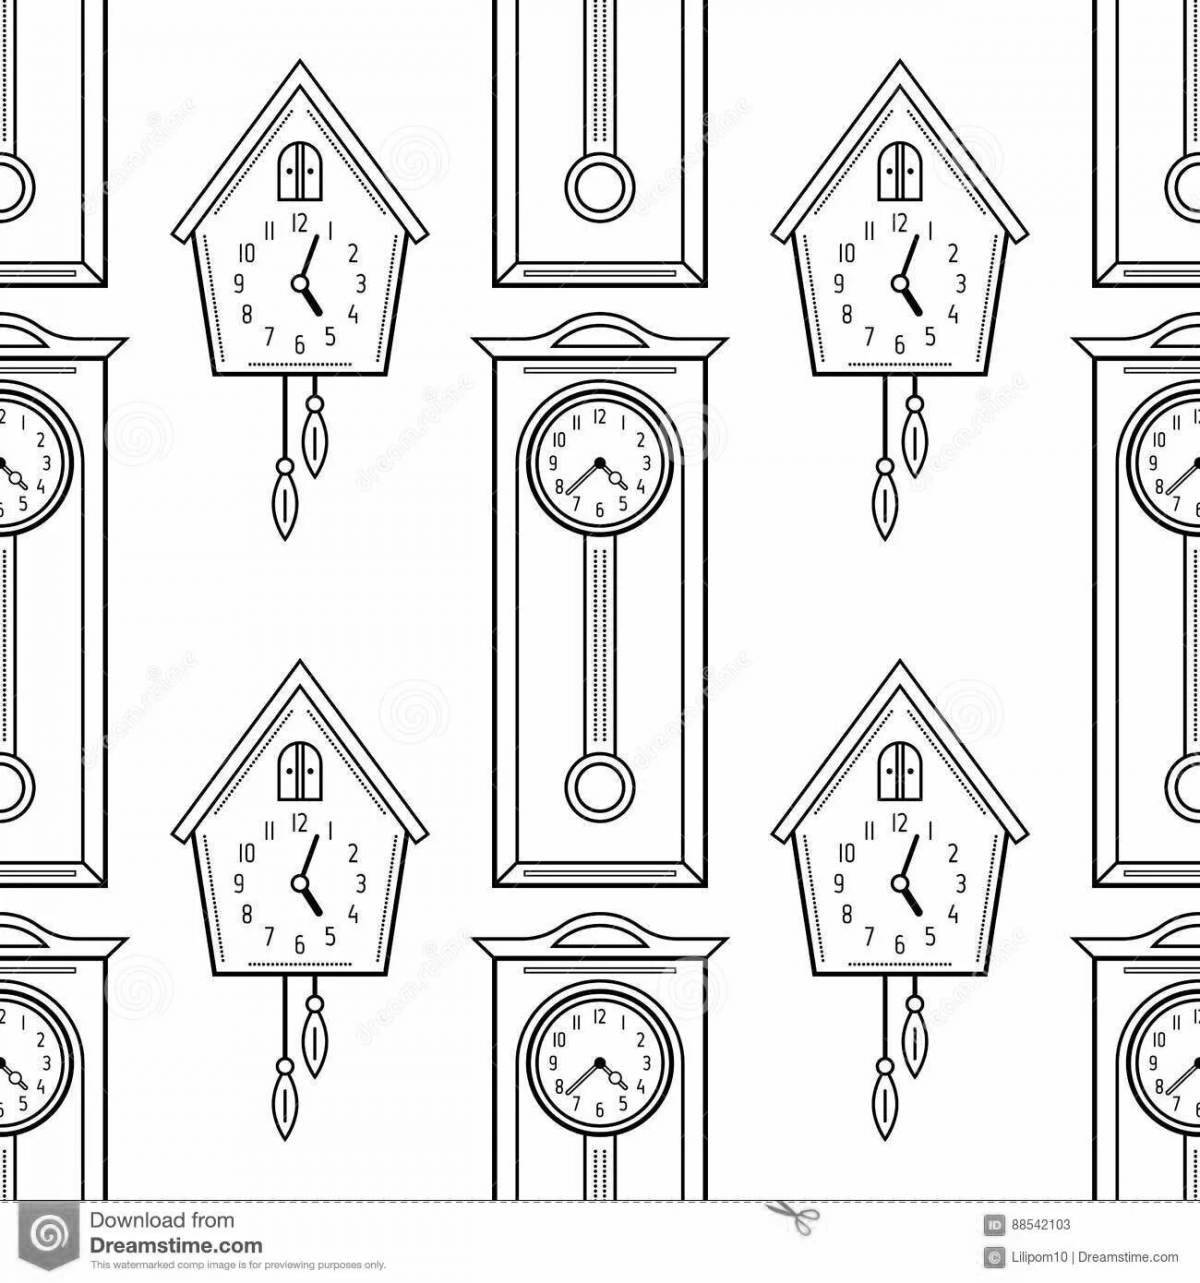 Coloring page royal cuckoo clock